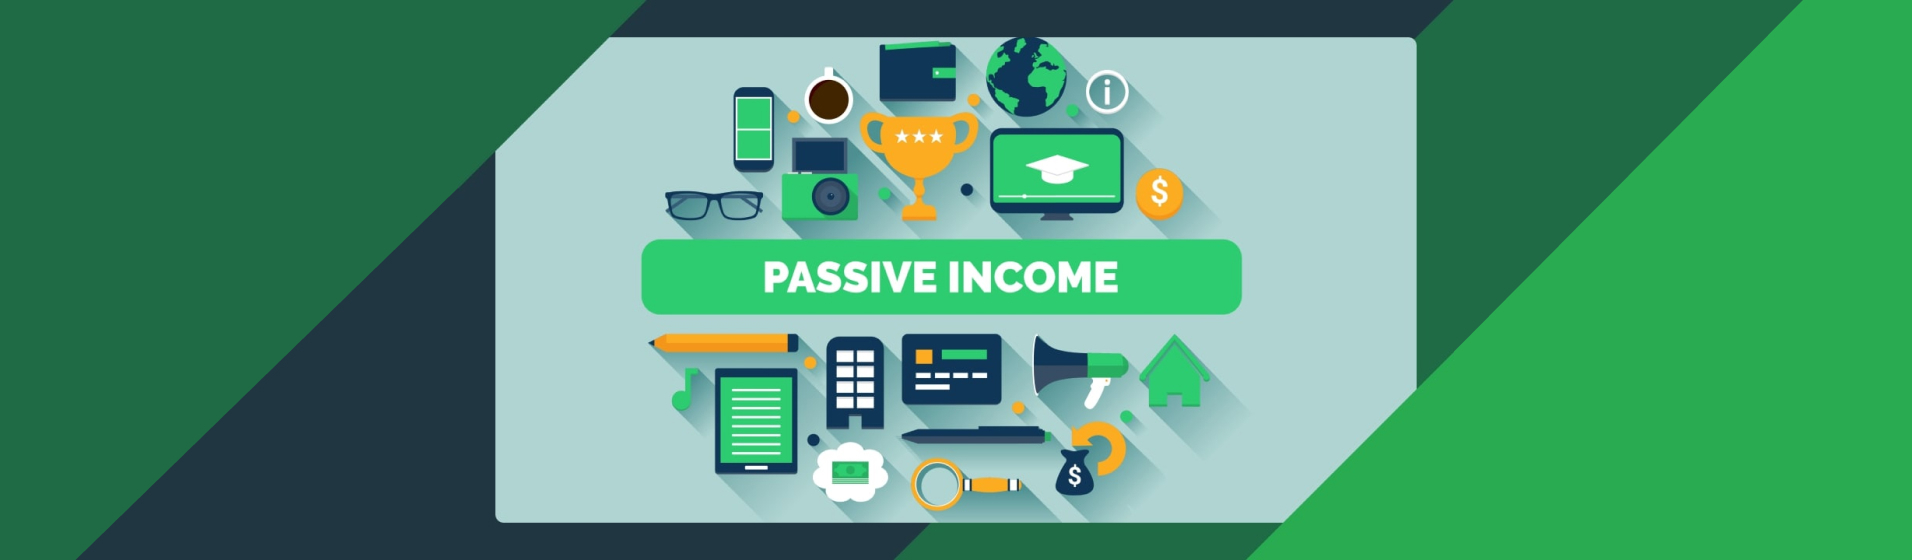 Passive Income ideas